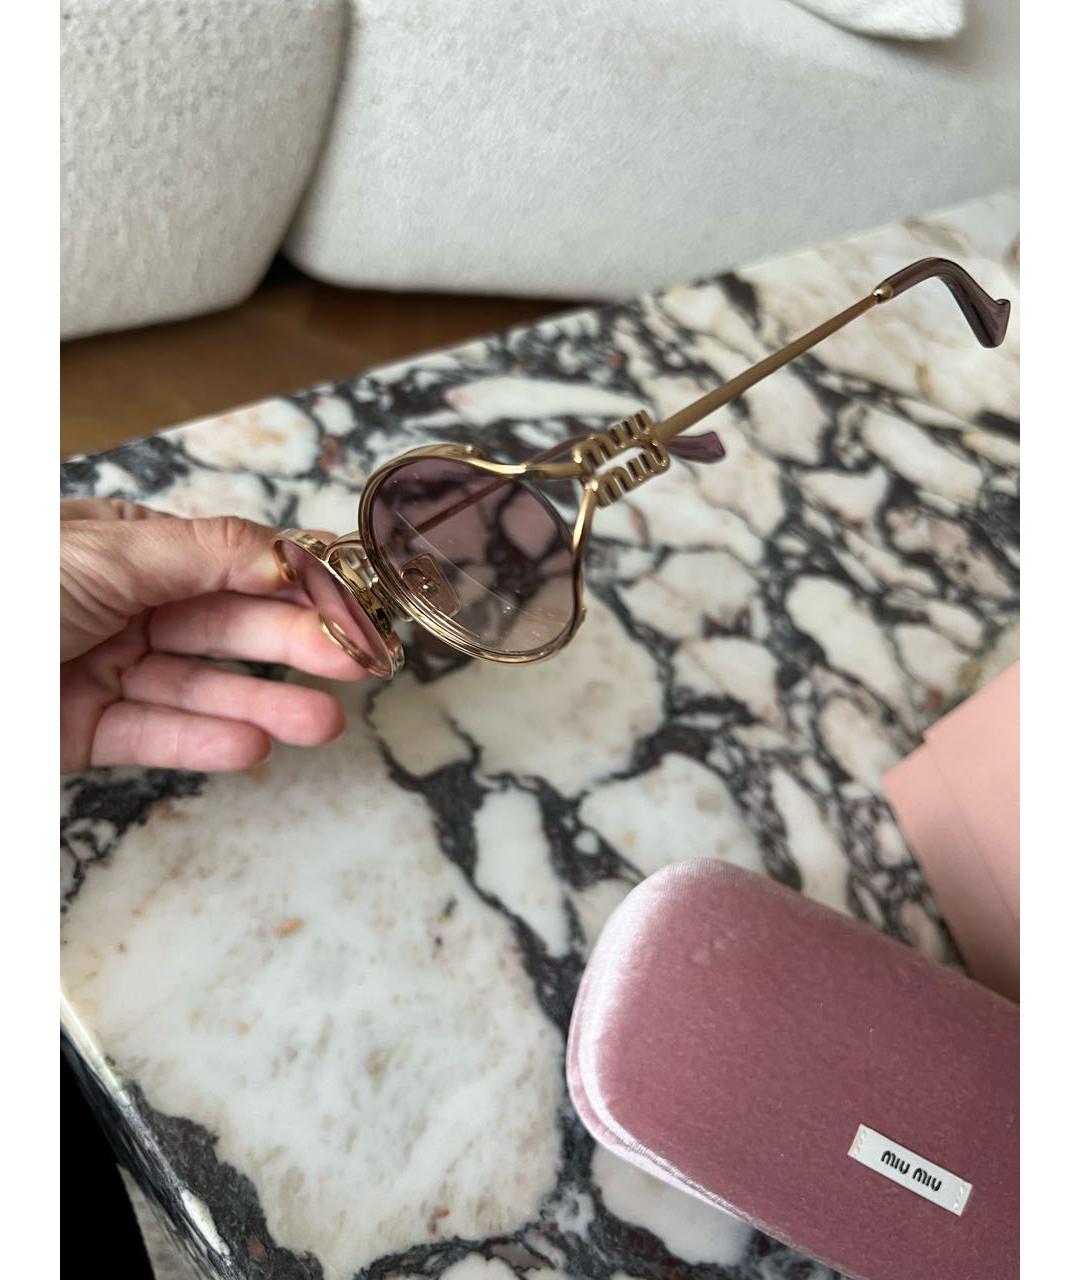 MIU MIU Розовые металлические солнцезащитные очки, фото 4